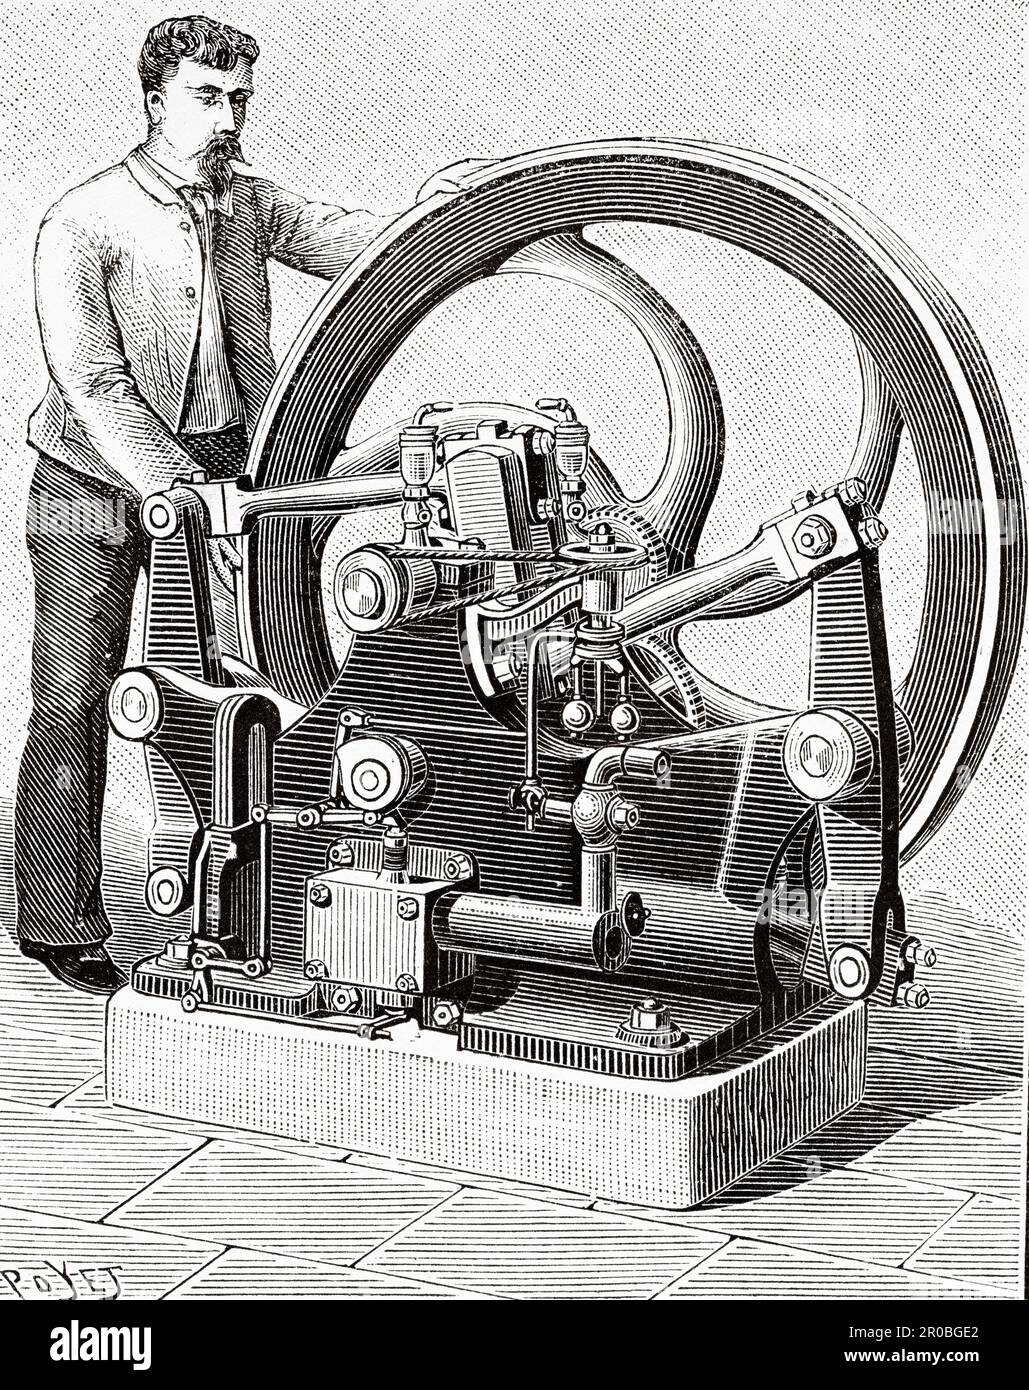 Volspuck machine, bateau pétrolier forestier. Ancienne gravure du 19th siècle de la nature 1887 Banque D'Images